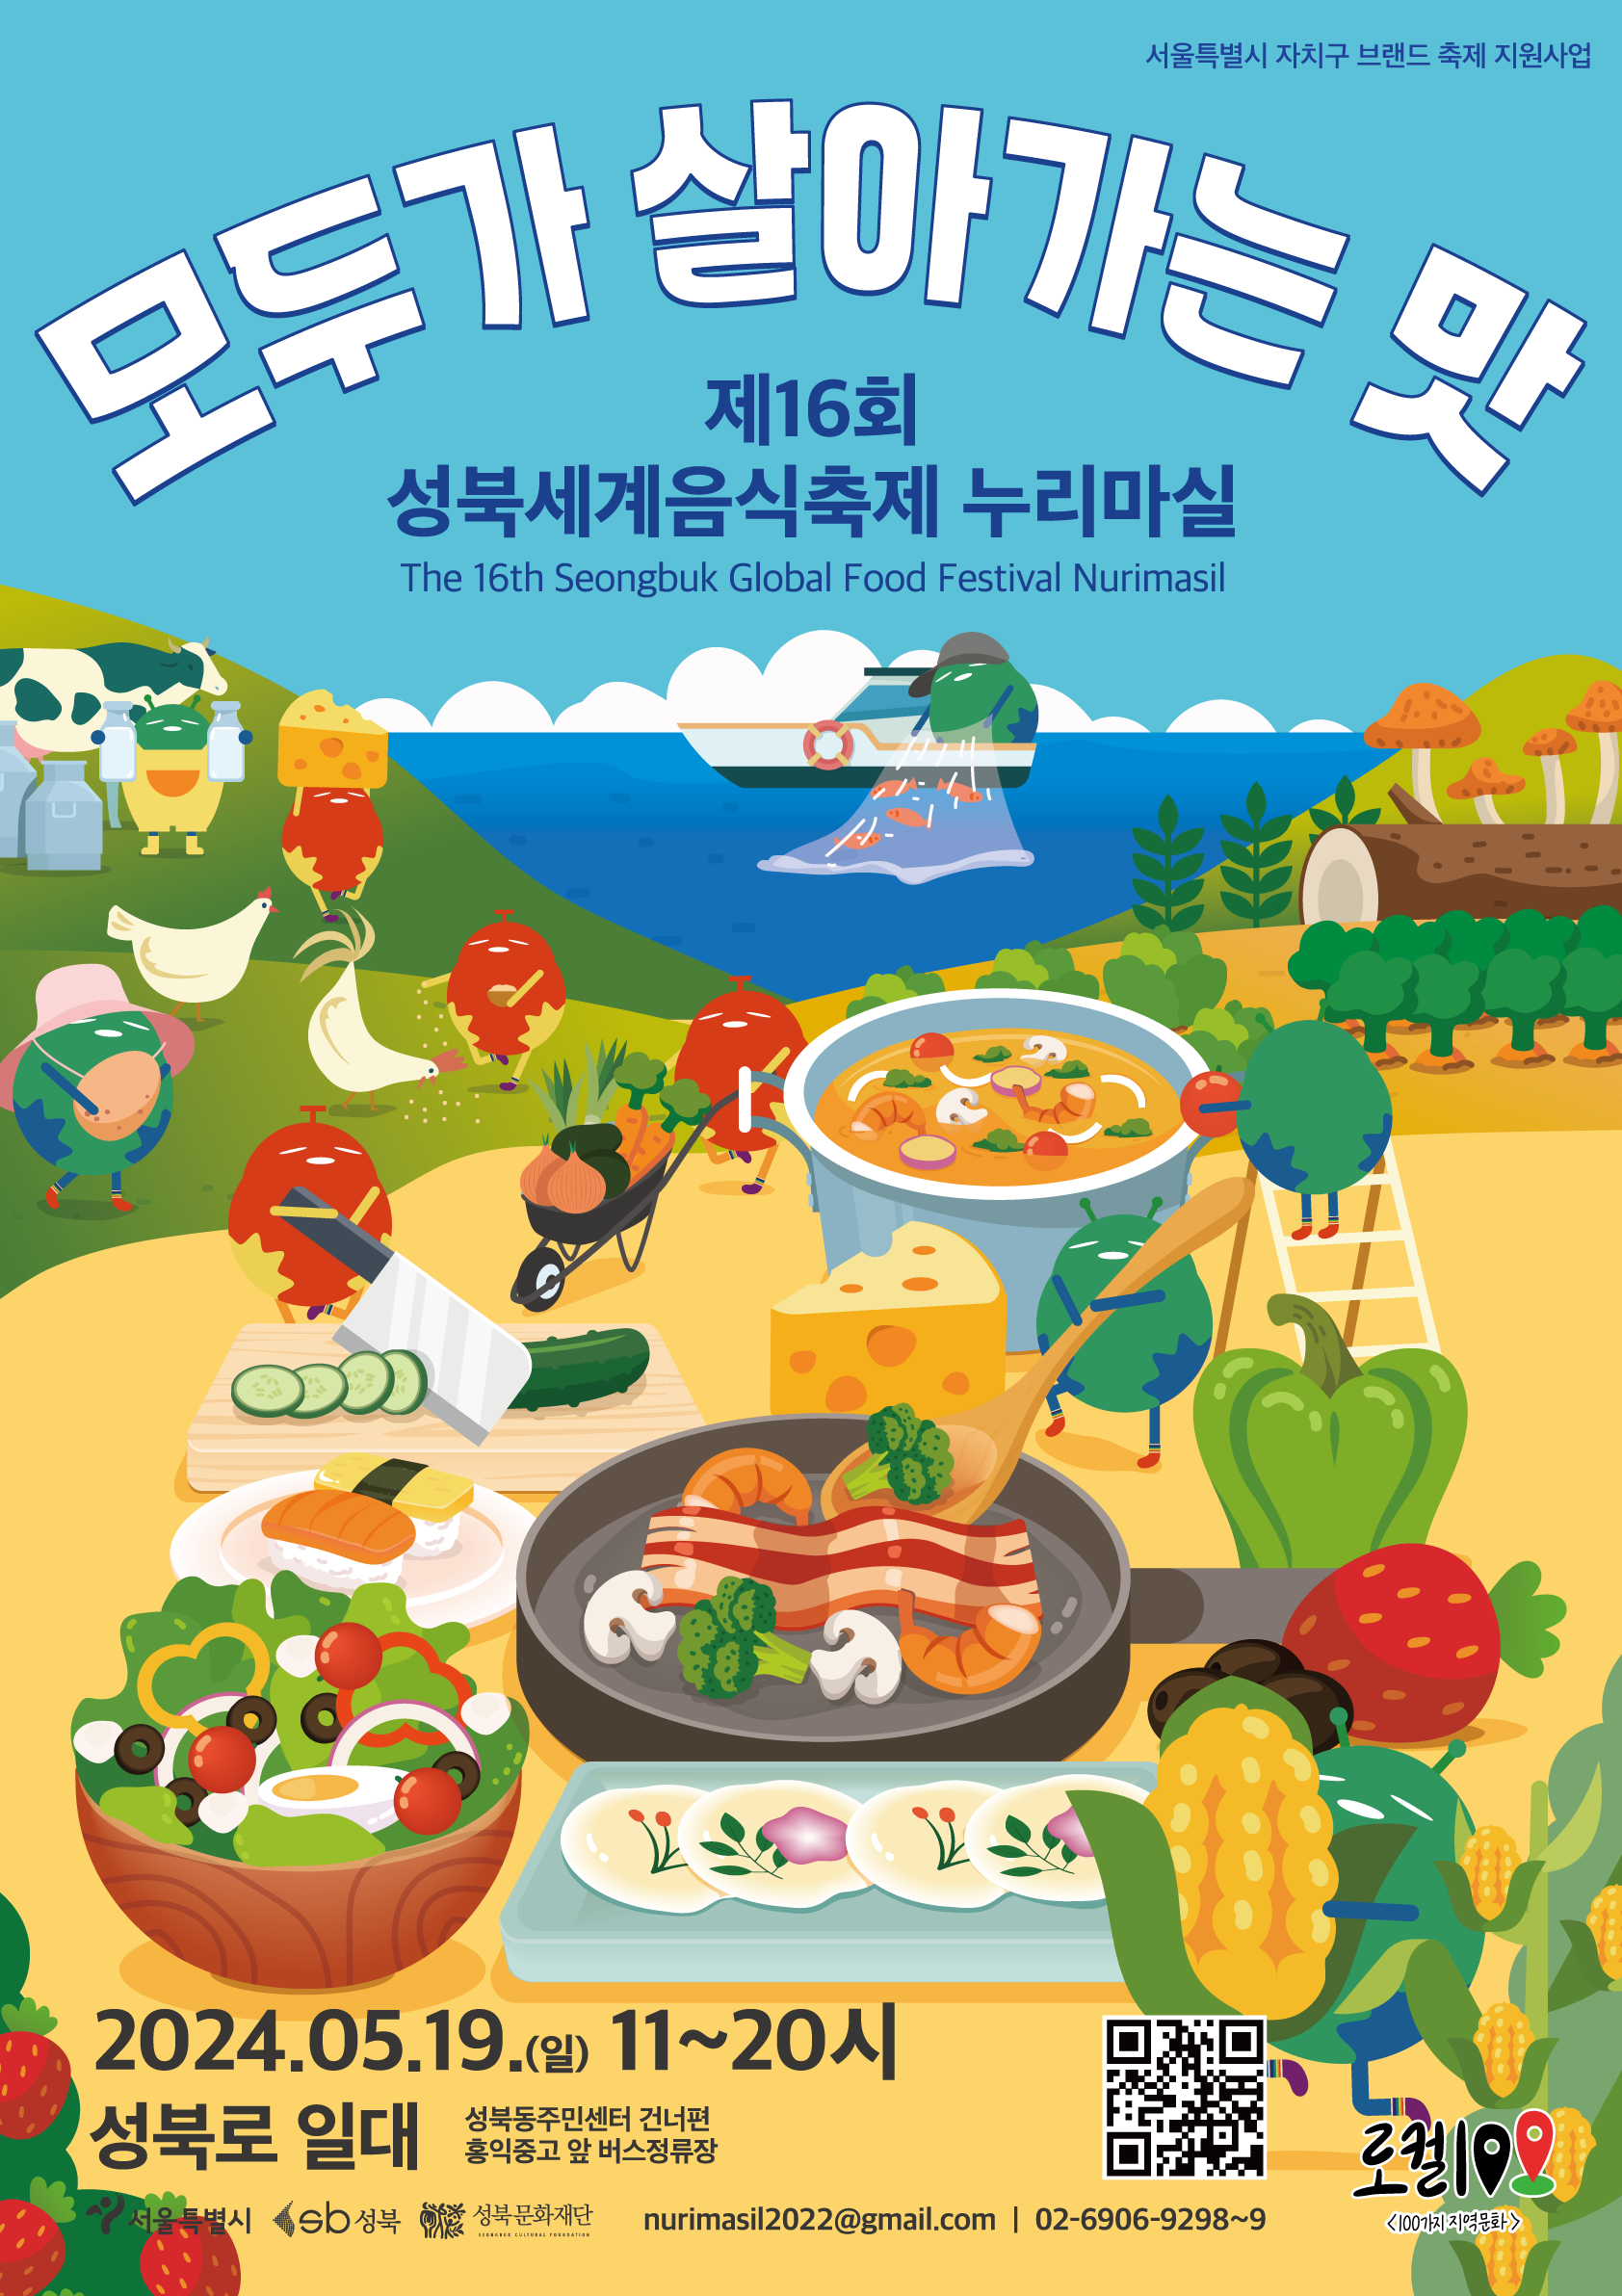 코로나 극복 응원 프로젝트 제 12회 성북세계음식축제 누리마실 마음의 손을 잡고 따로 또 같이 2024년 